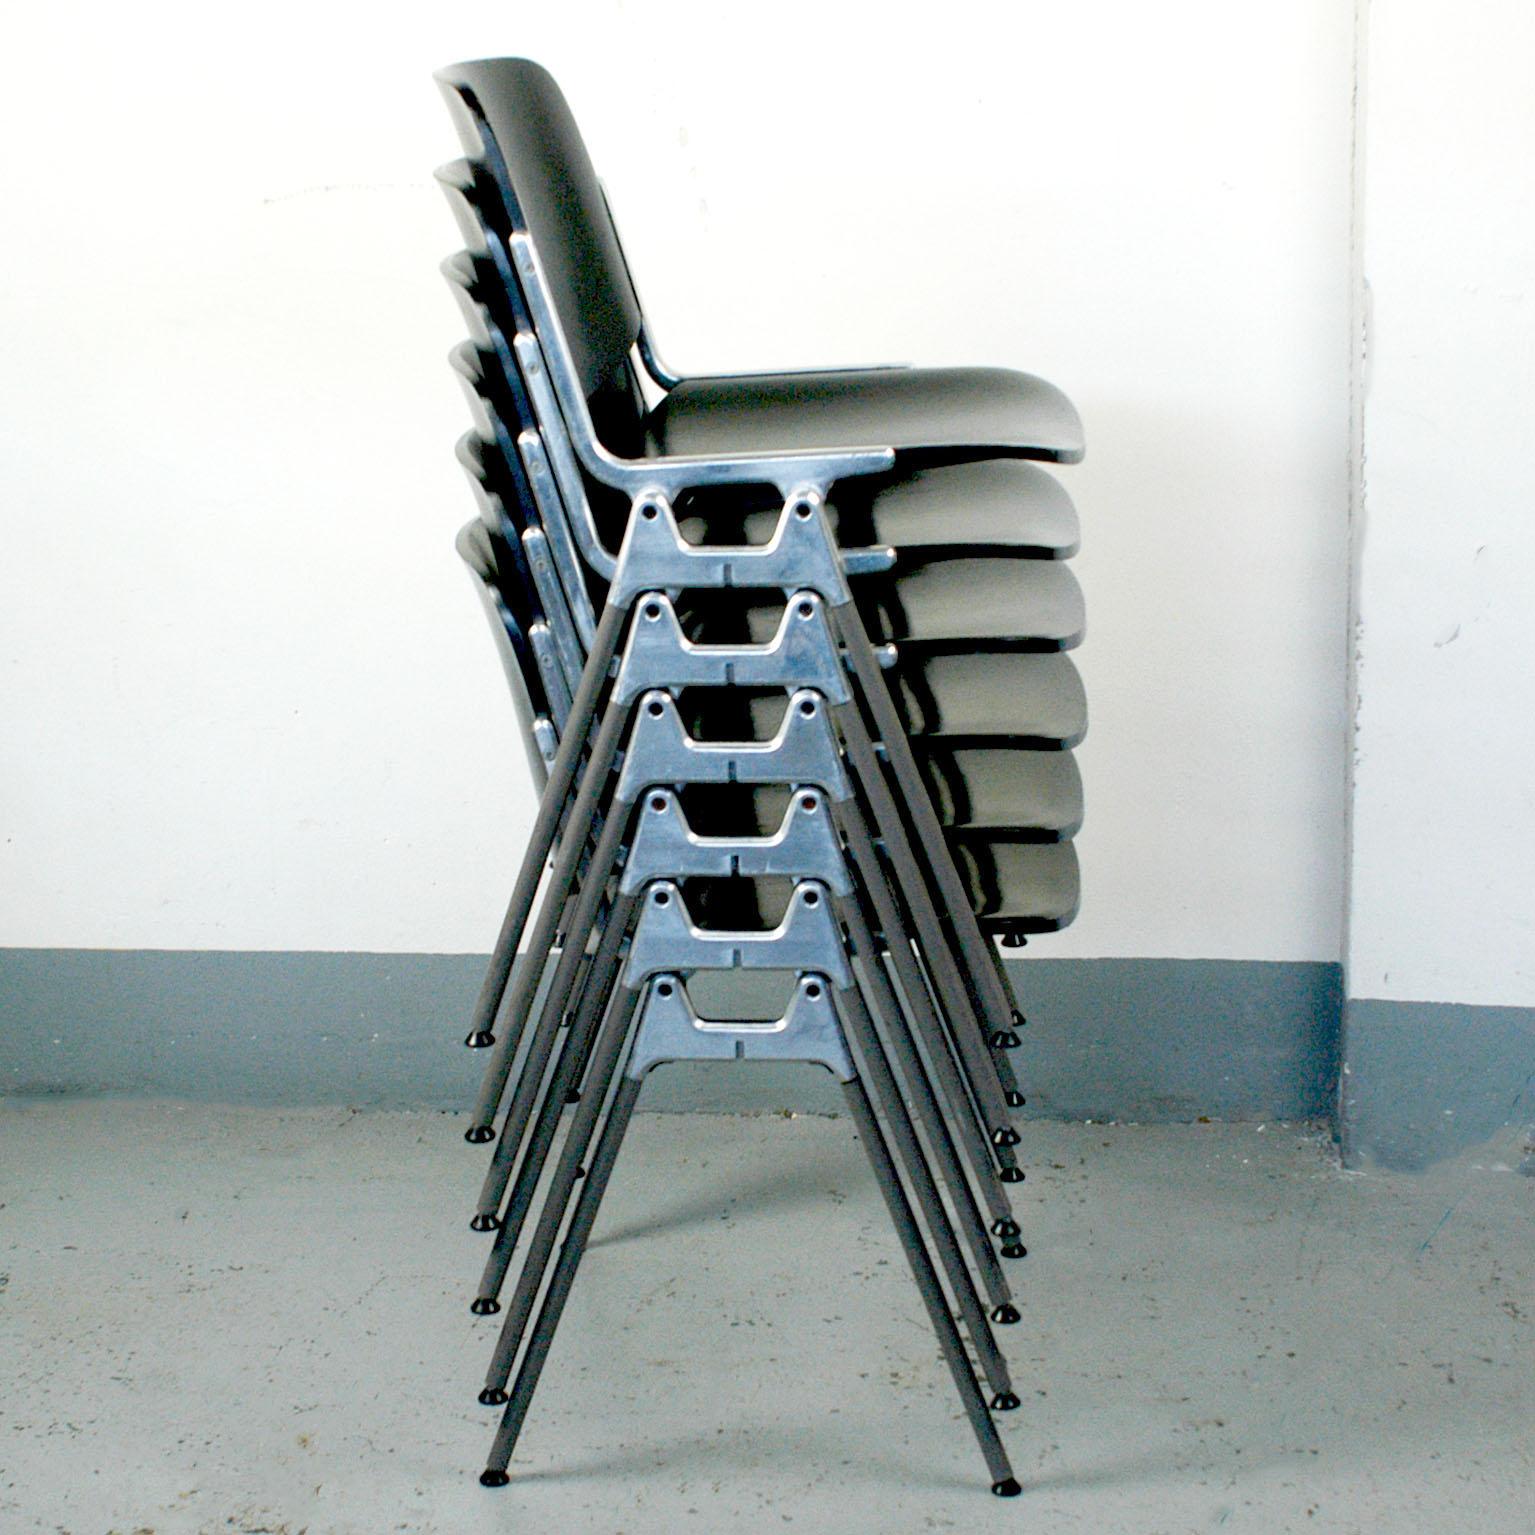 Ensemble de quatre chaises empilables DSC 106, conçues en 1965 par Giancarlo Piretti pour Castelli. Cet ensemble comprend des sièges et des dossiers laqués noirs, ils sont en très bon état avec quelques signes d'usure dus à leur âge. Parfaites et